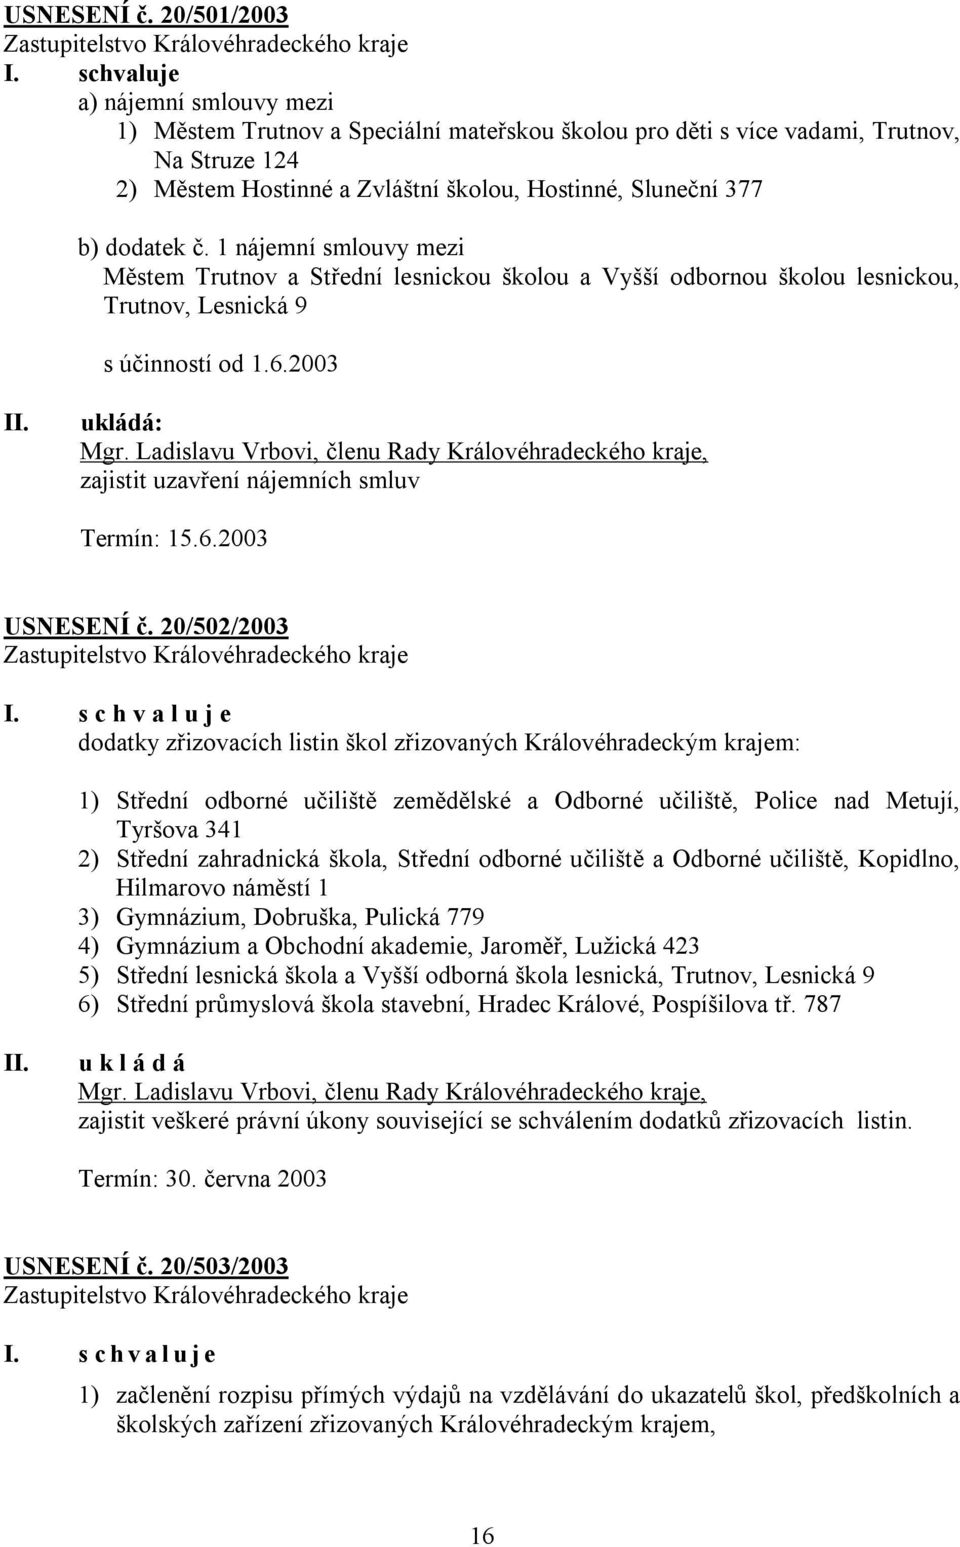 č. 1 nájemní smlouvy mezi Městem Trutnov a Střední lesnickou školou a Vyšší odbornou školou lesnickou, Trutnov, Lesnická 9 s účinností od 1.6.2003 ukládá: Mgr.